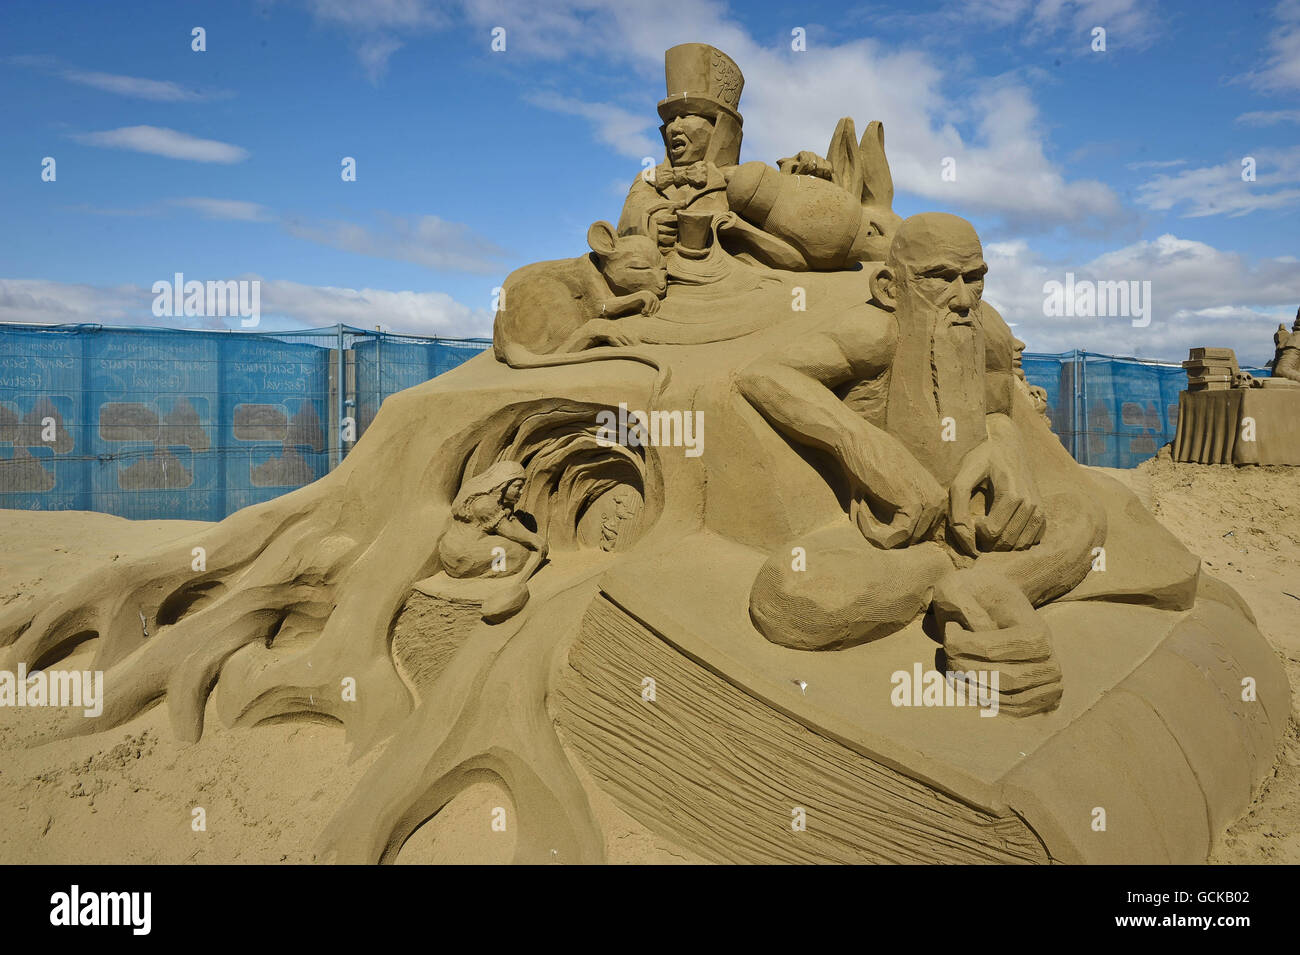 Une sculpture d'Alice au pays des merveilles dans le Weston-super-Mare Sand Sculpture Festival sur la plage, qui cette année a le thème et la célébration de toutes choses britanniques. Banque D'Images